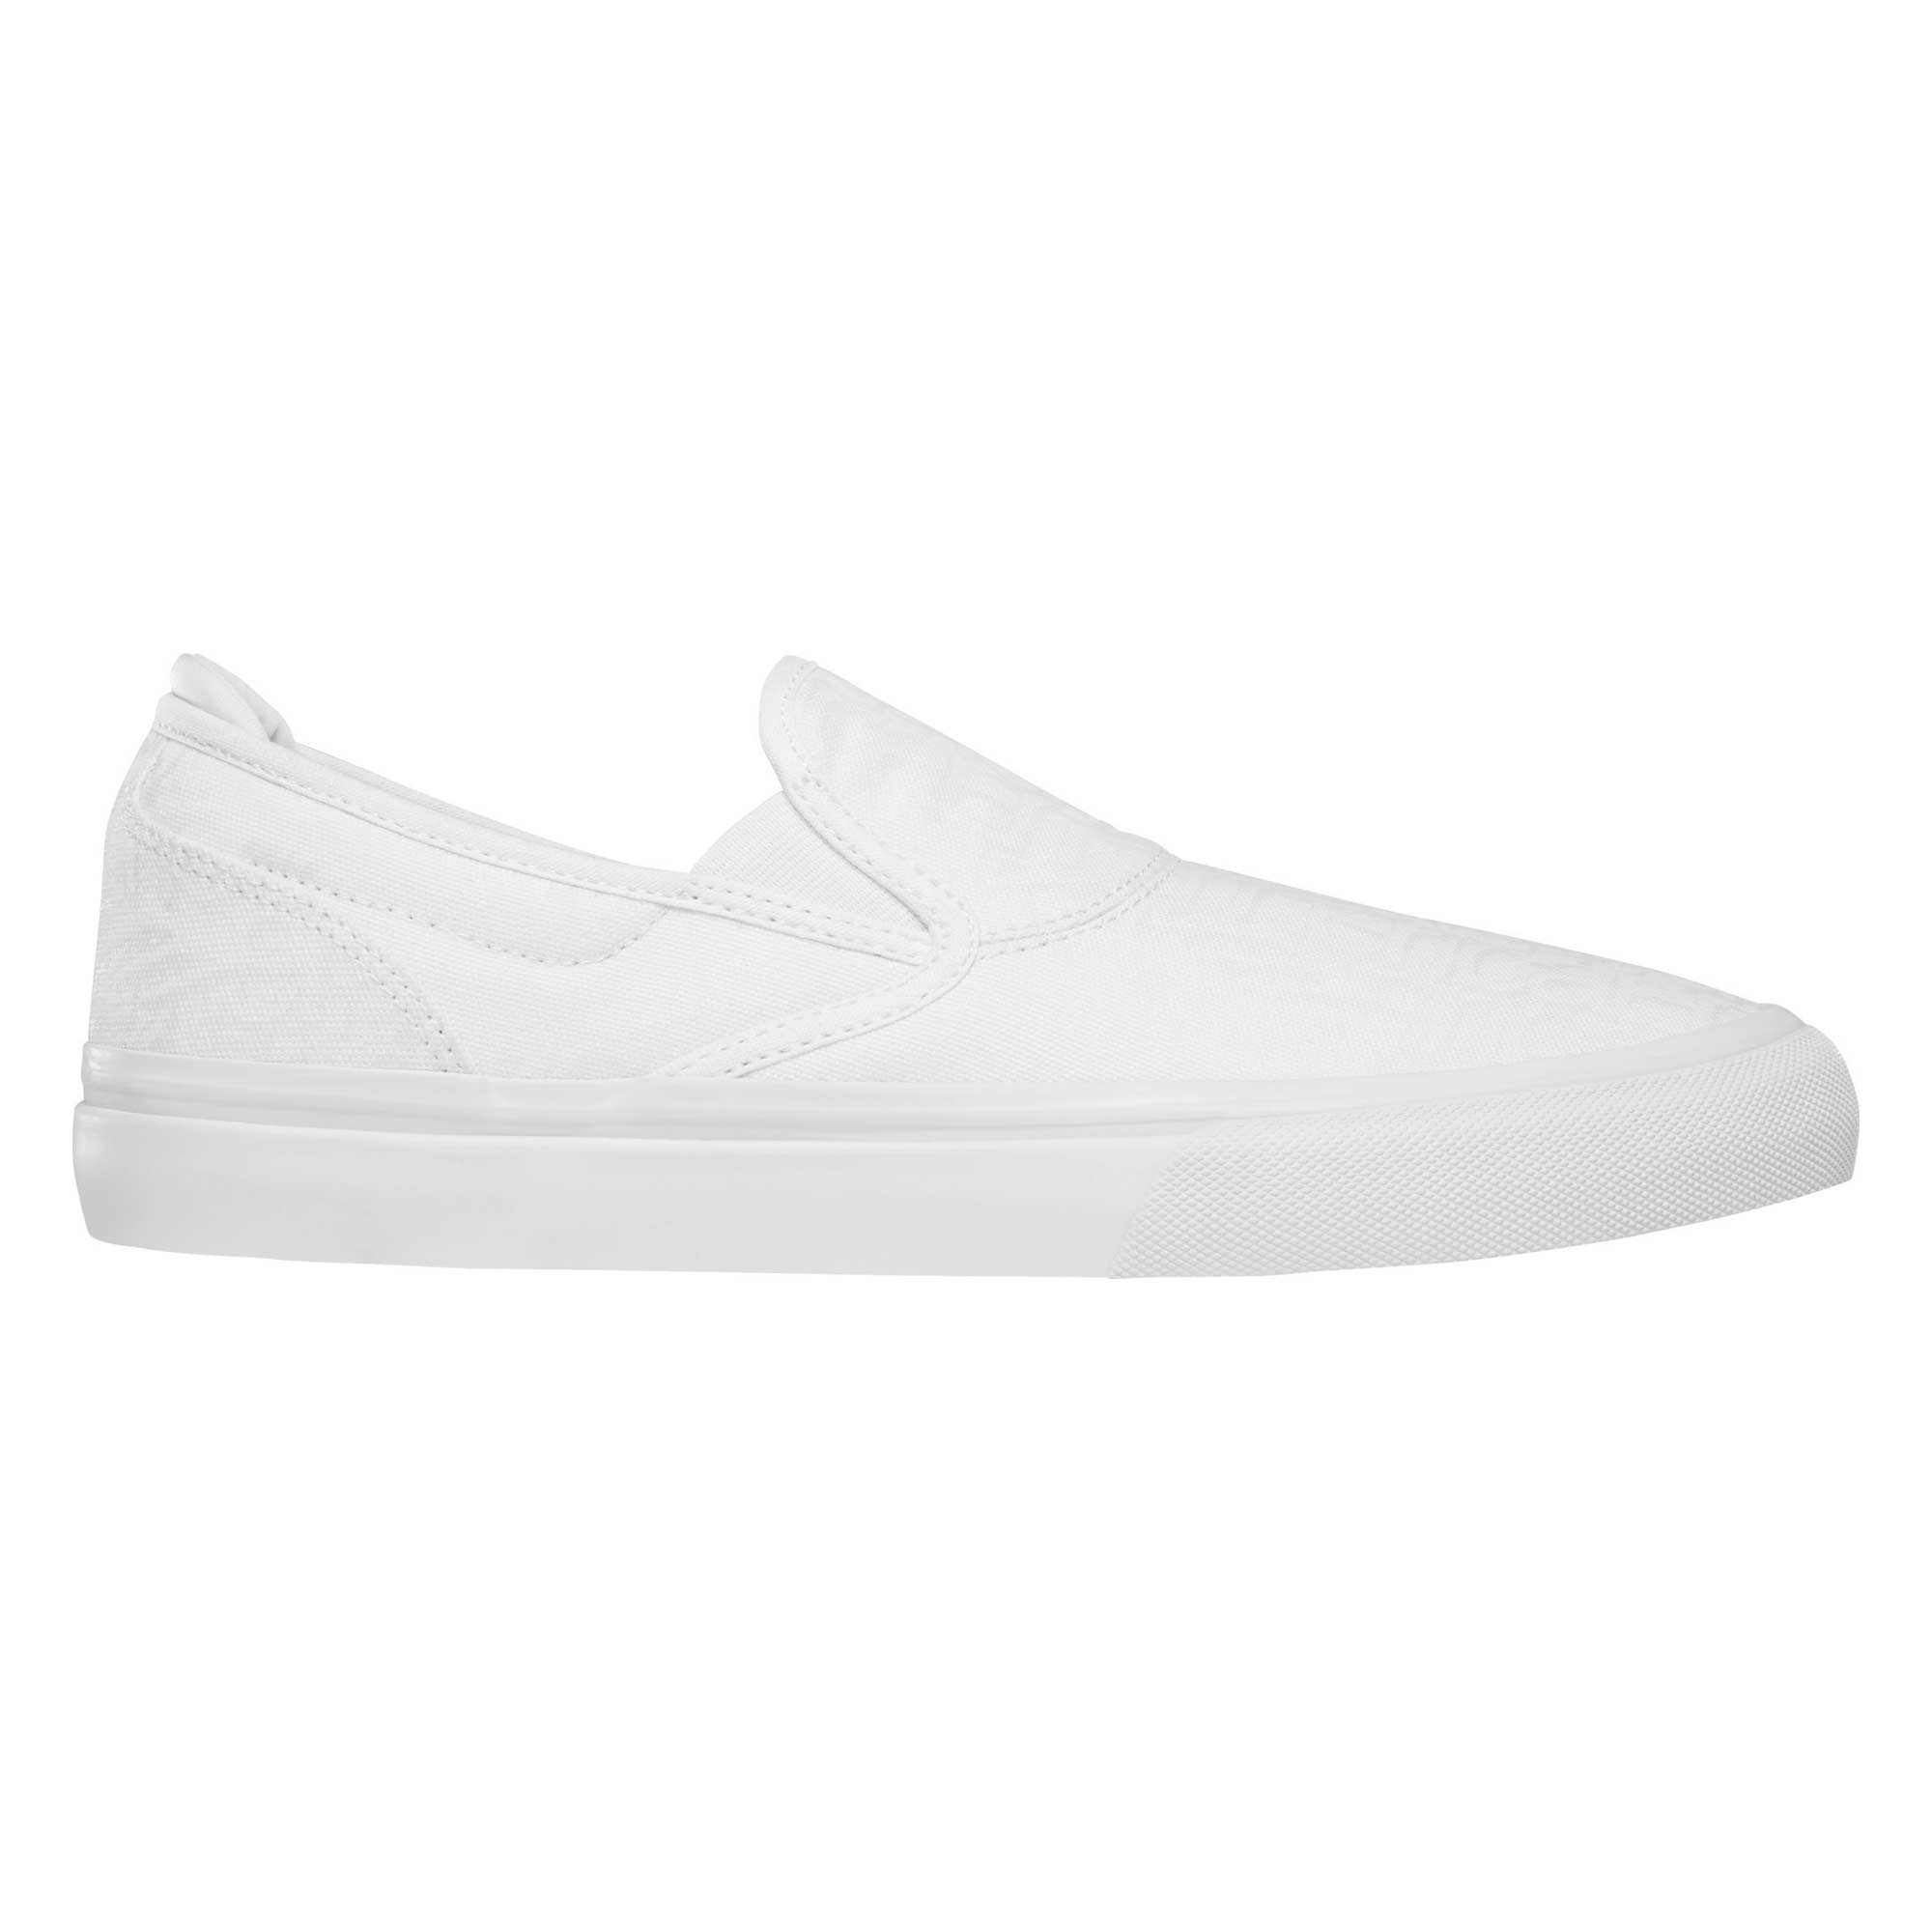 EMERICA Shoe WINO G6 SLIP-ON whi/pri, white/print